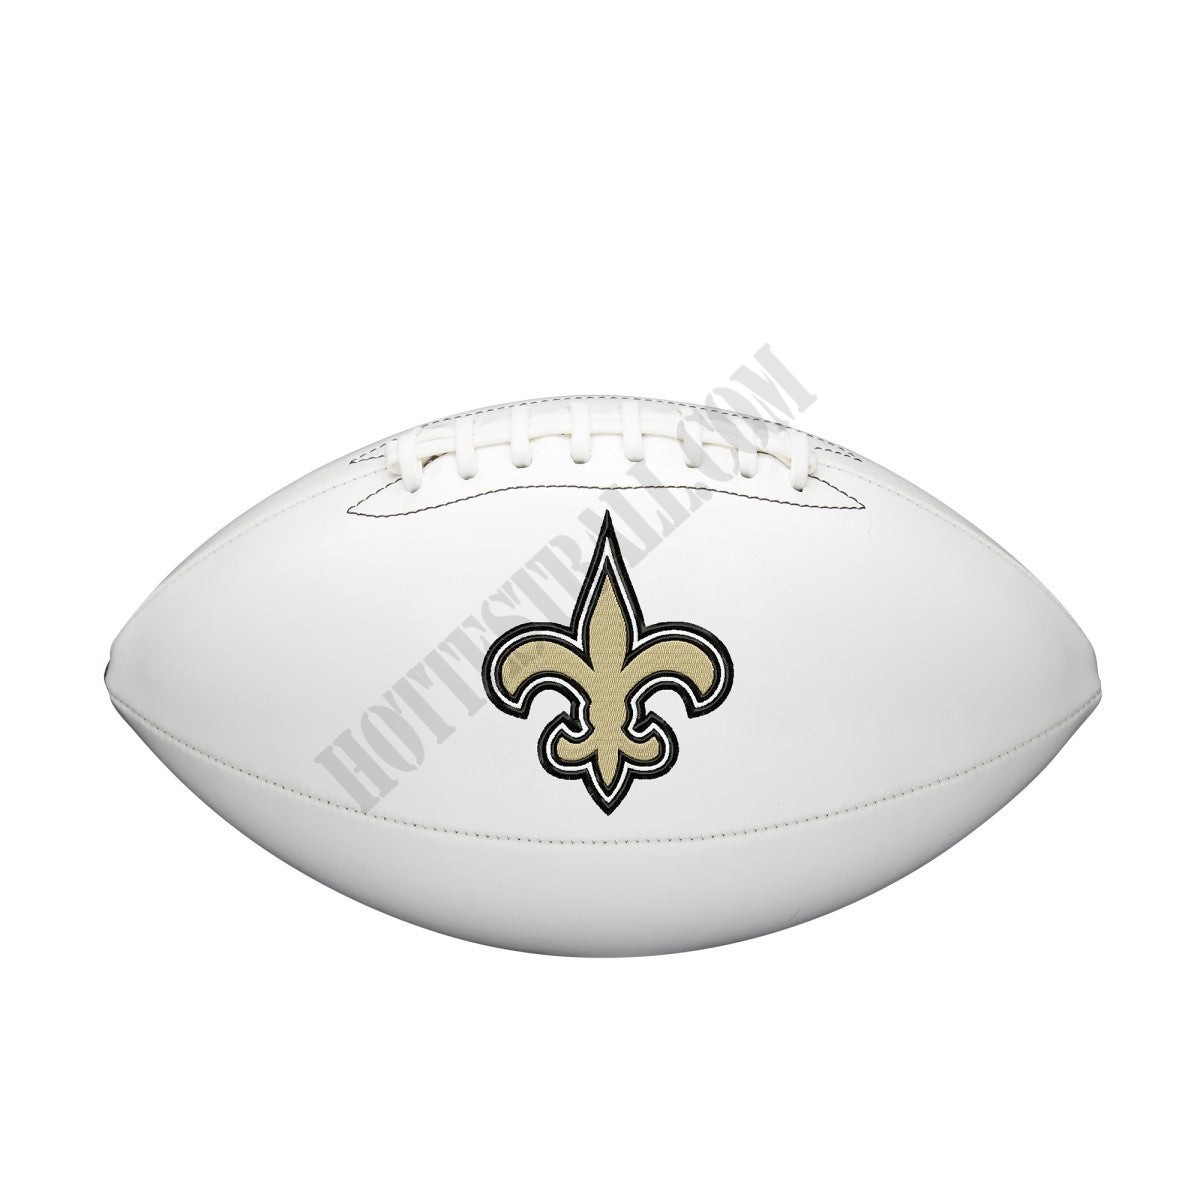 NFL Live Signature Autograph Football - New Orleans Saints ● Wilson Promotions - NFL Live Signature Autograph Football - New Orleans Saints ● Wilson Promotions